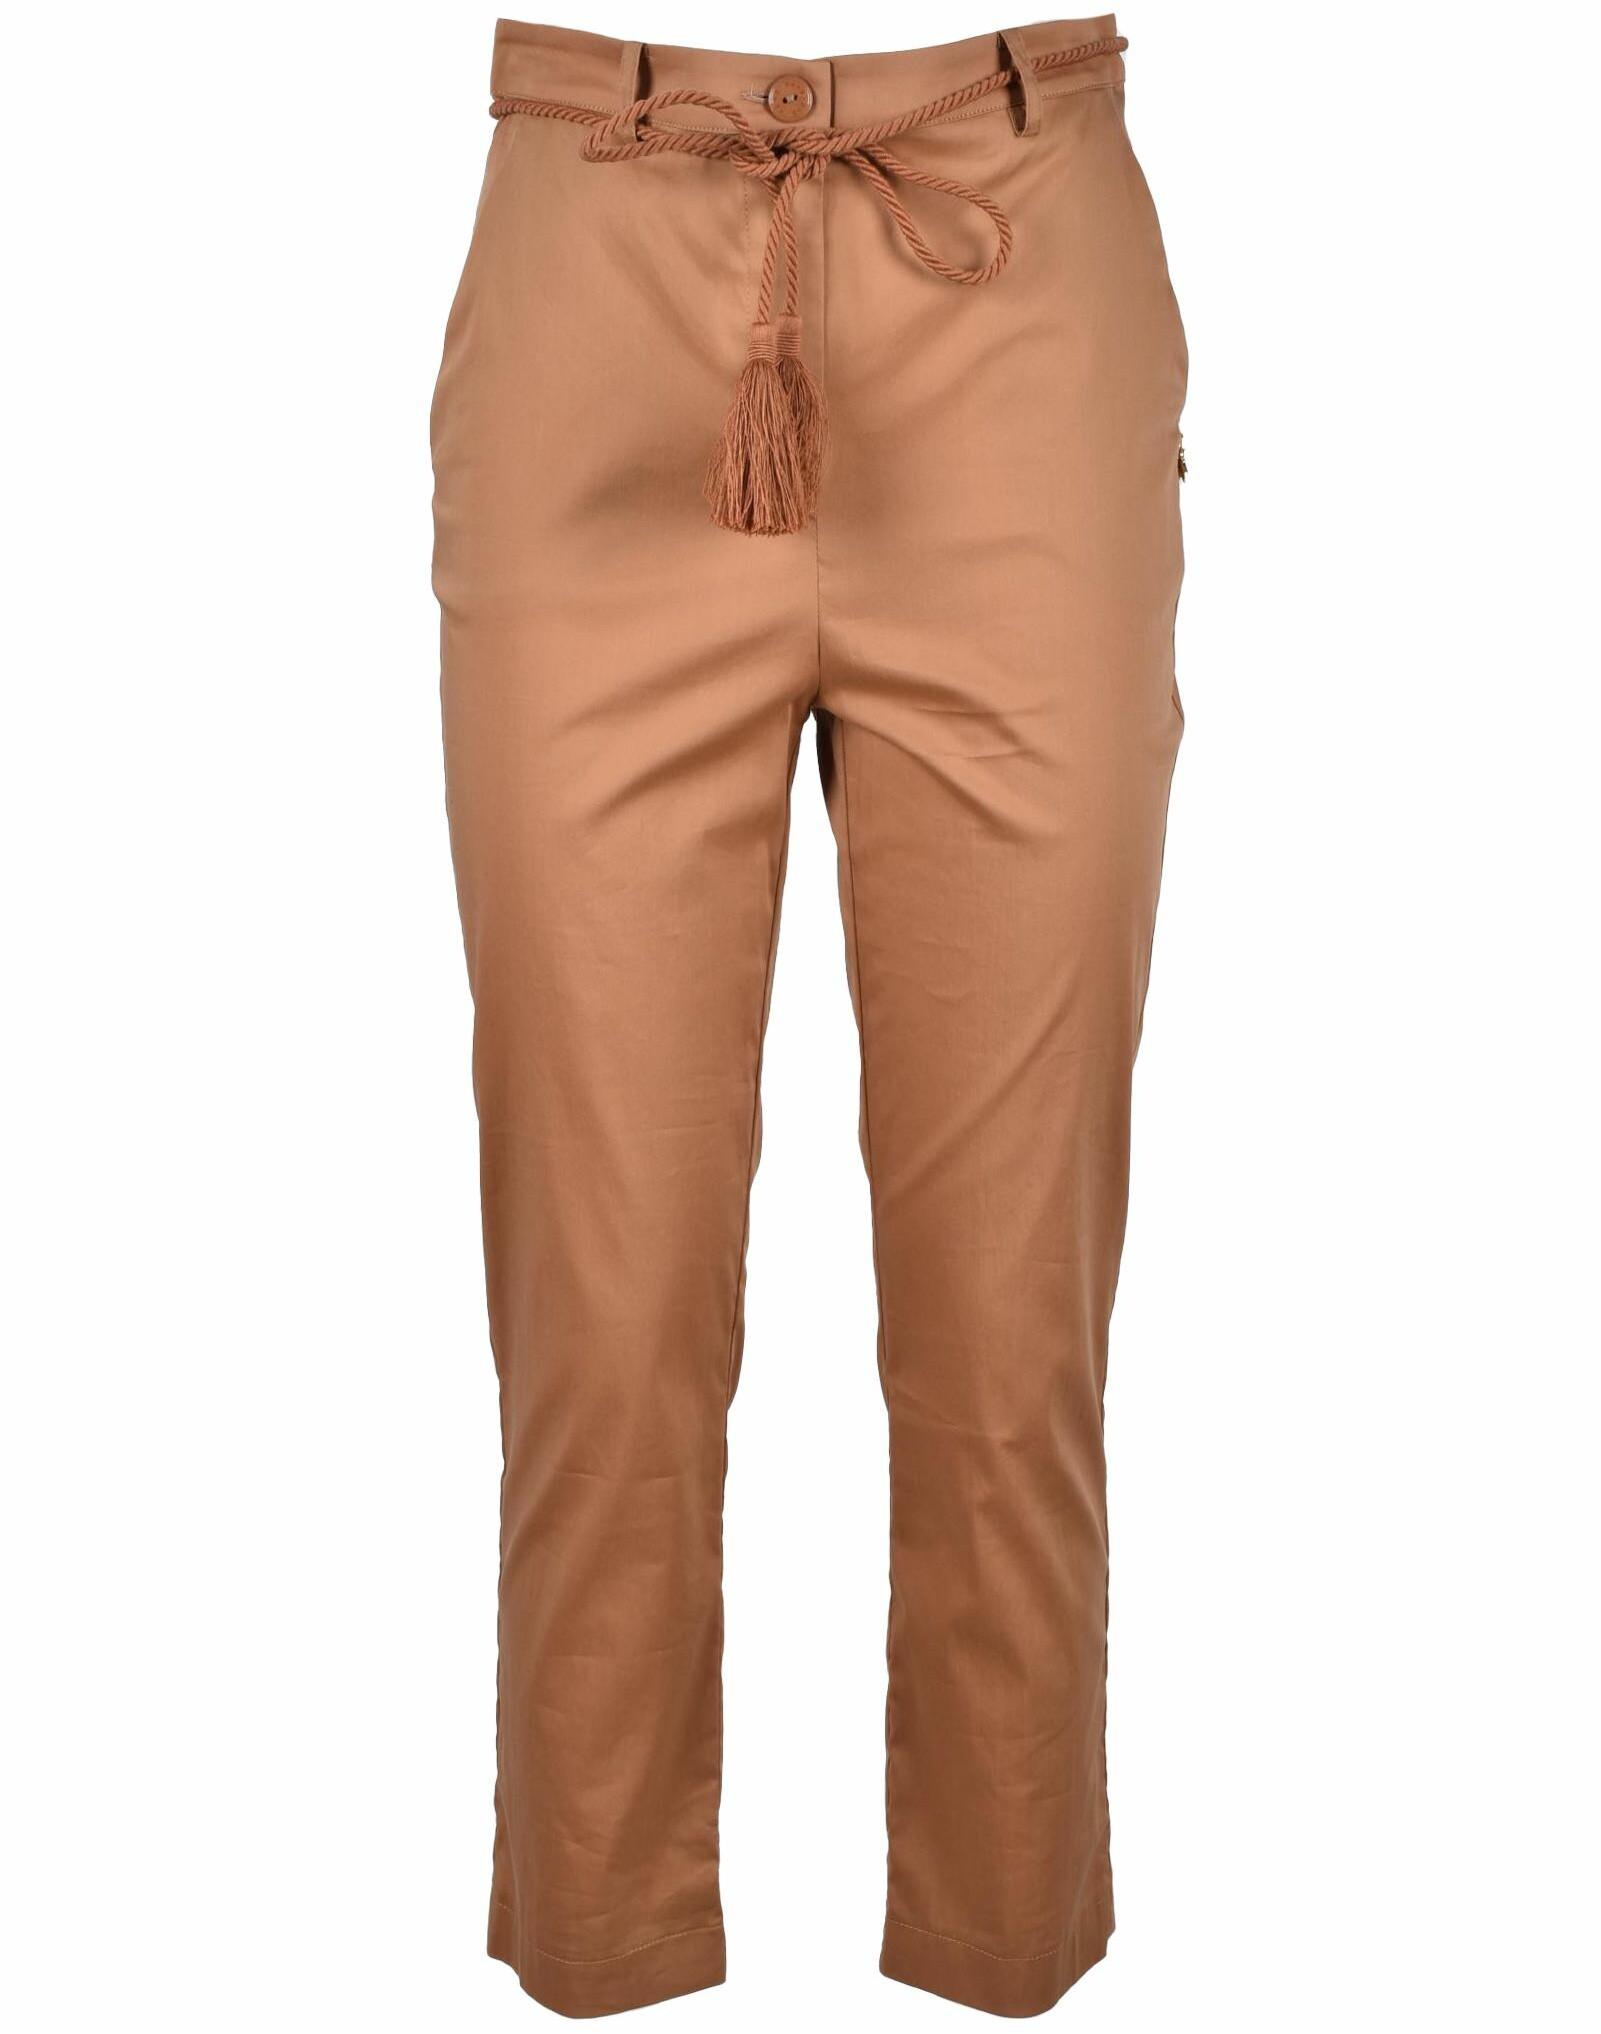 Women's Brown Pants